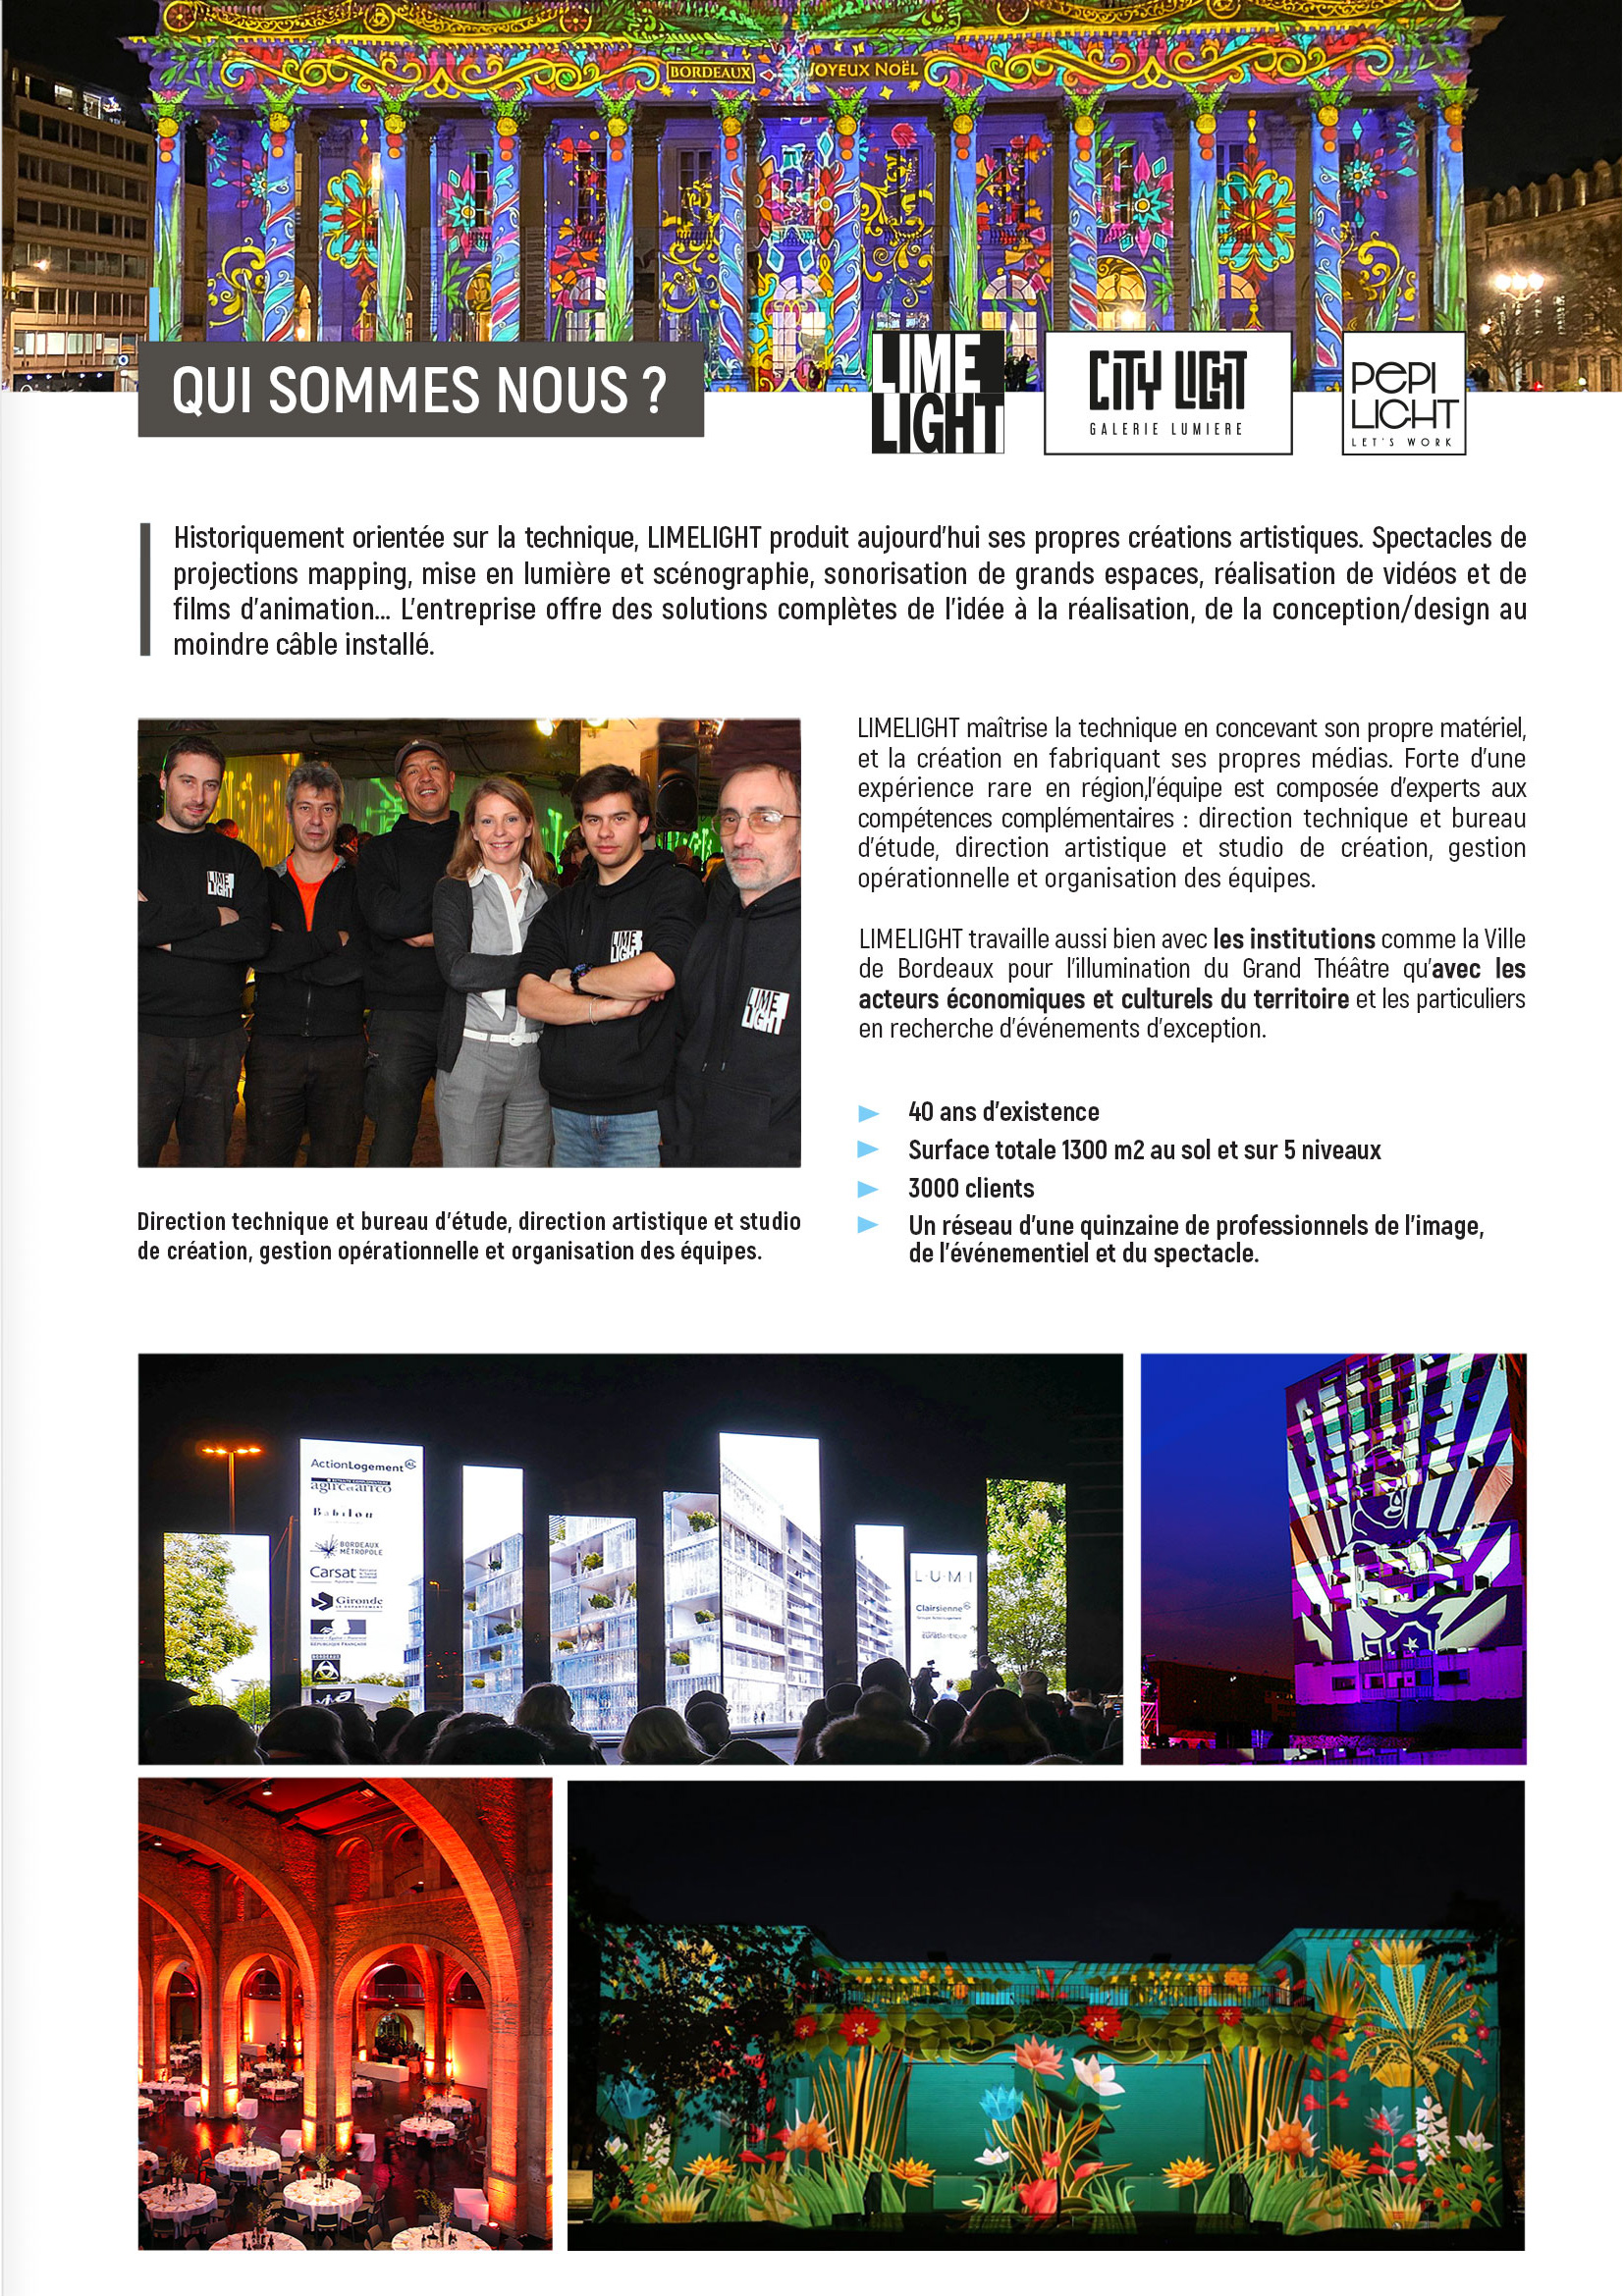 City Light - Galerie Lumière, 200 cours Balguerie Suttenberg 33300 Bordeaux